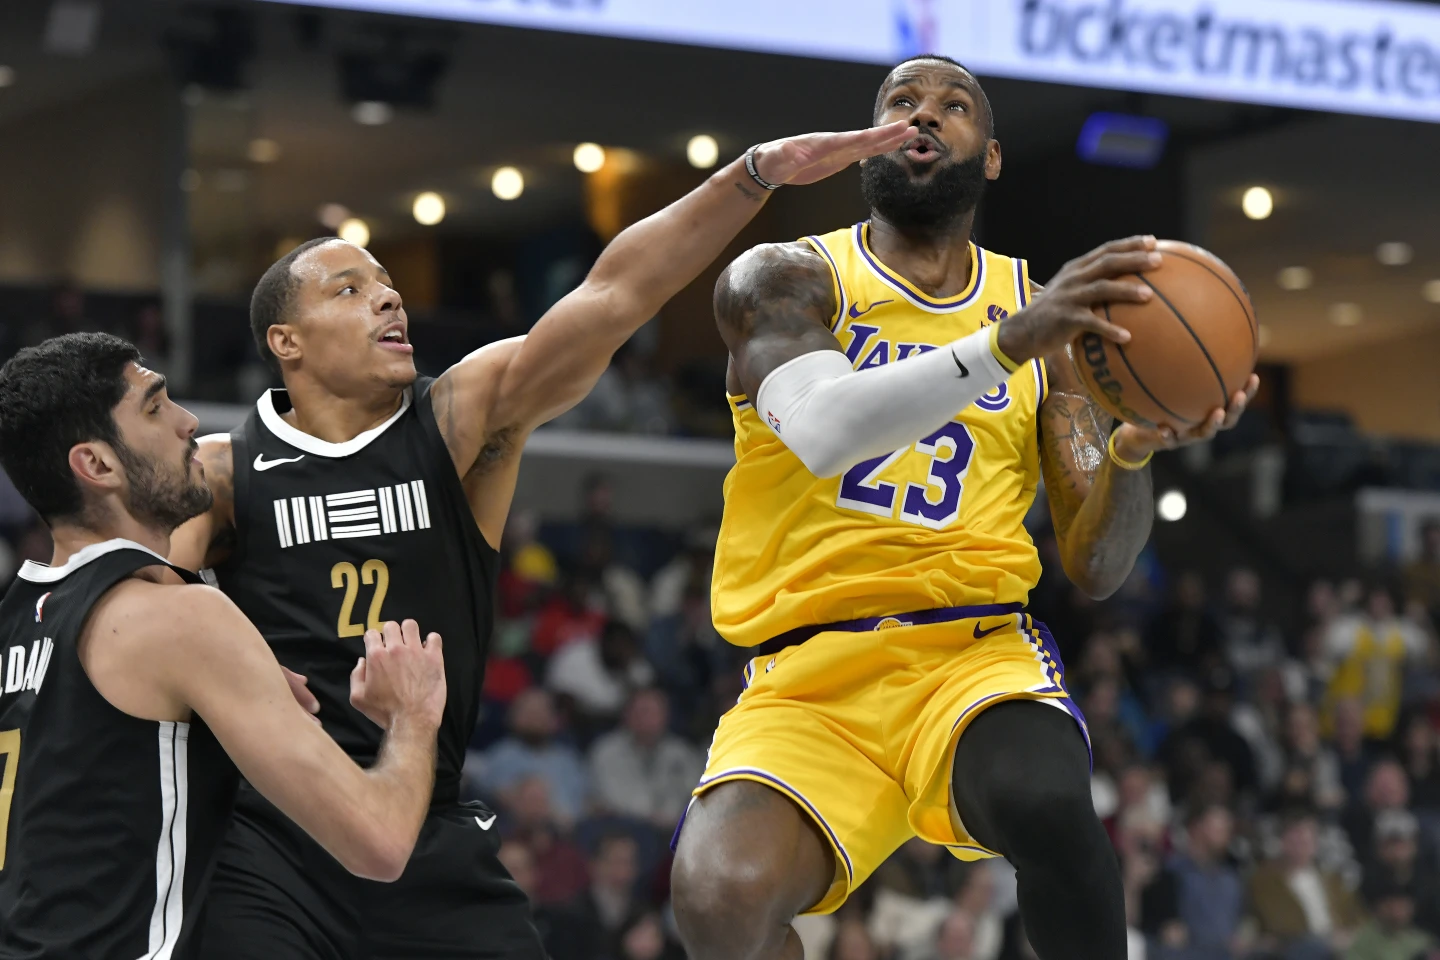 LeBron James records a triple-double as Los Angeles Lakers defeat Memphis Grizzlies, 136-124